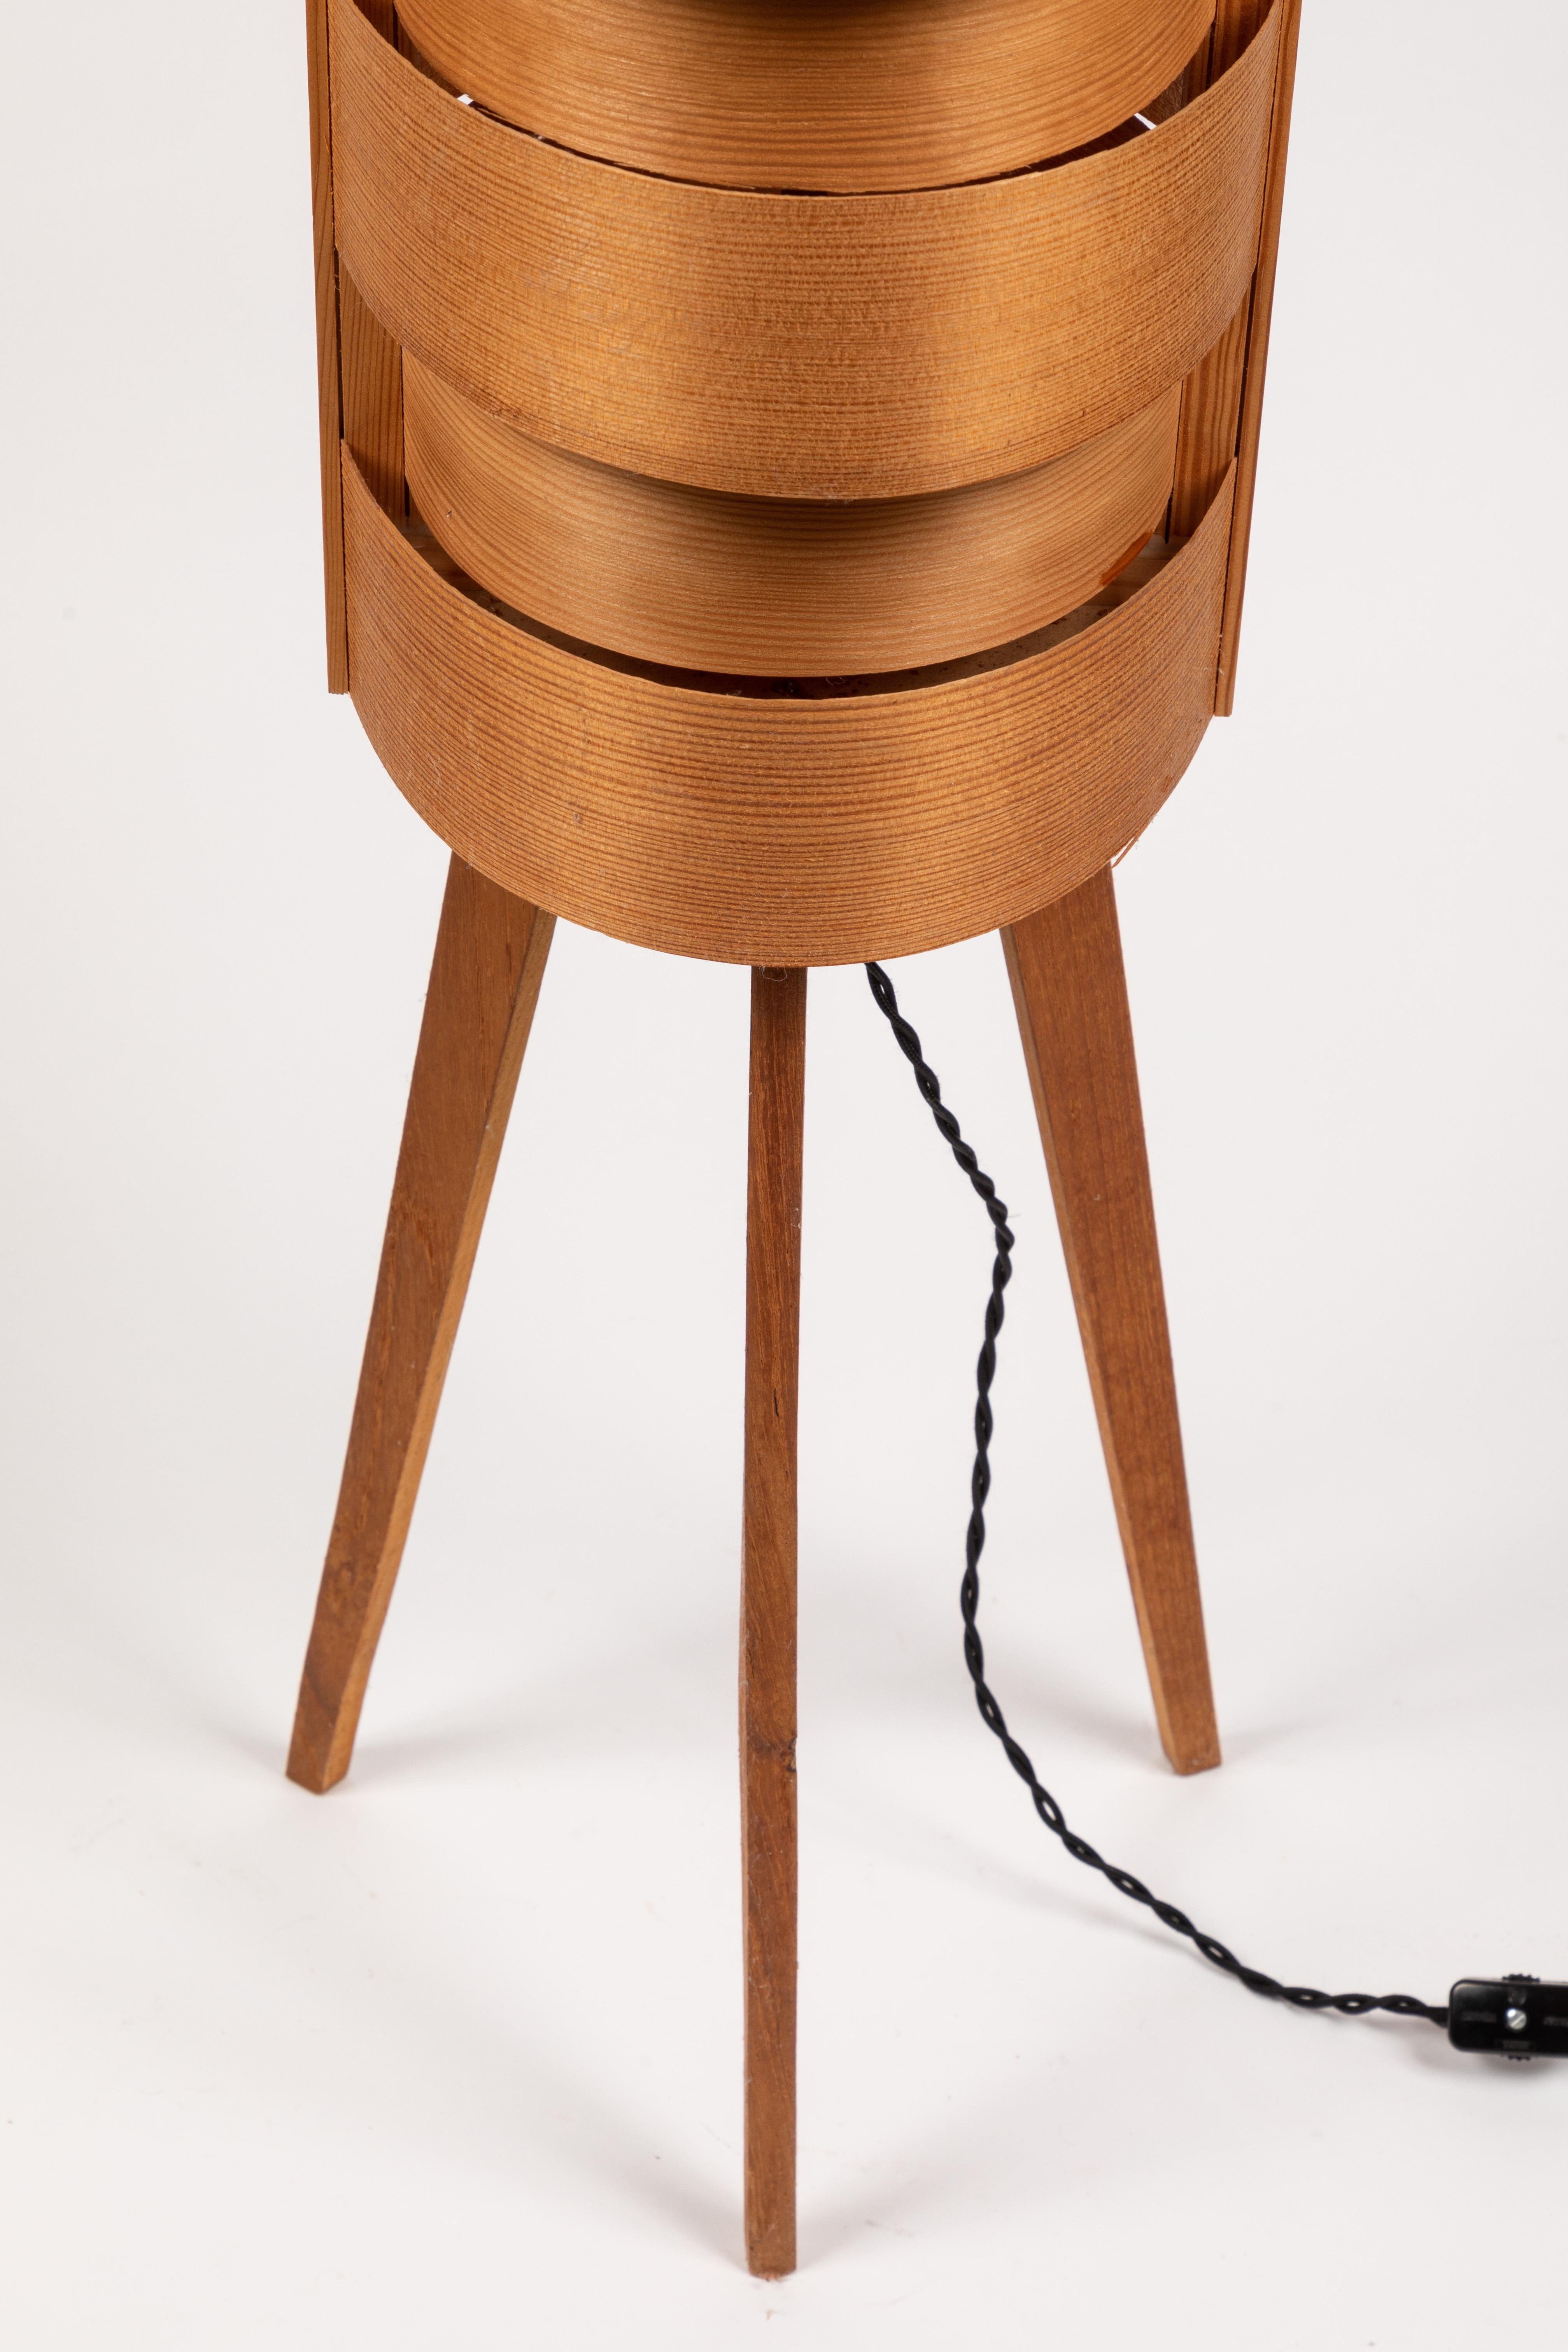 1960s Hans-Agne Jakobsson Wood Tripod Floor Lamp for AB Ellysett For Sale 2